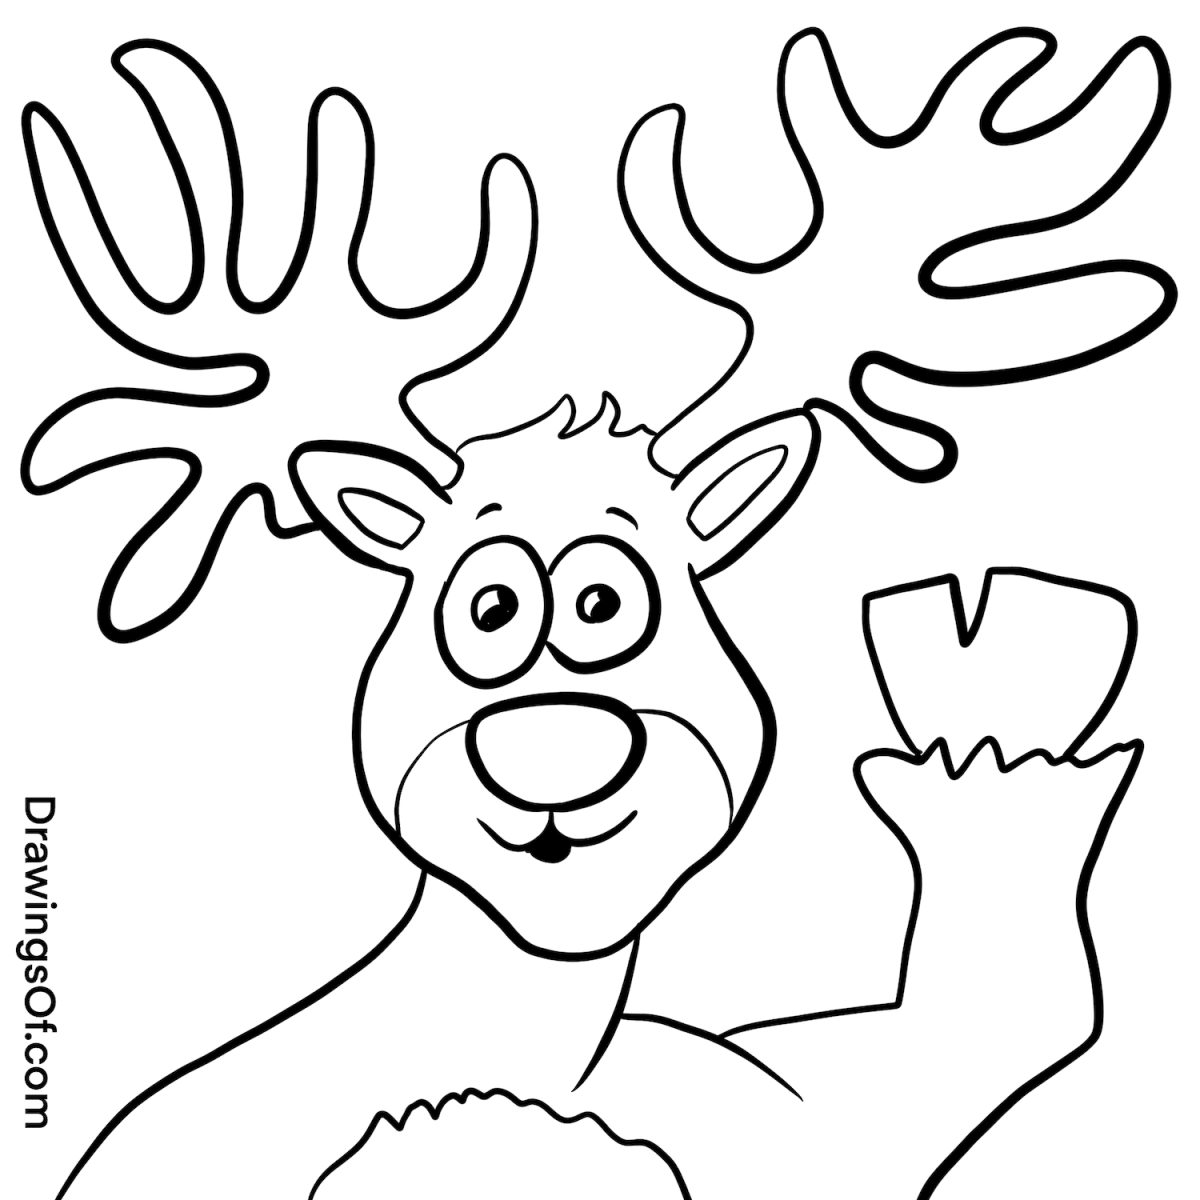 Reindeer drawing cute easy cartoon instructions